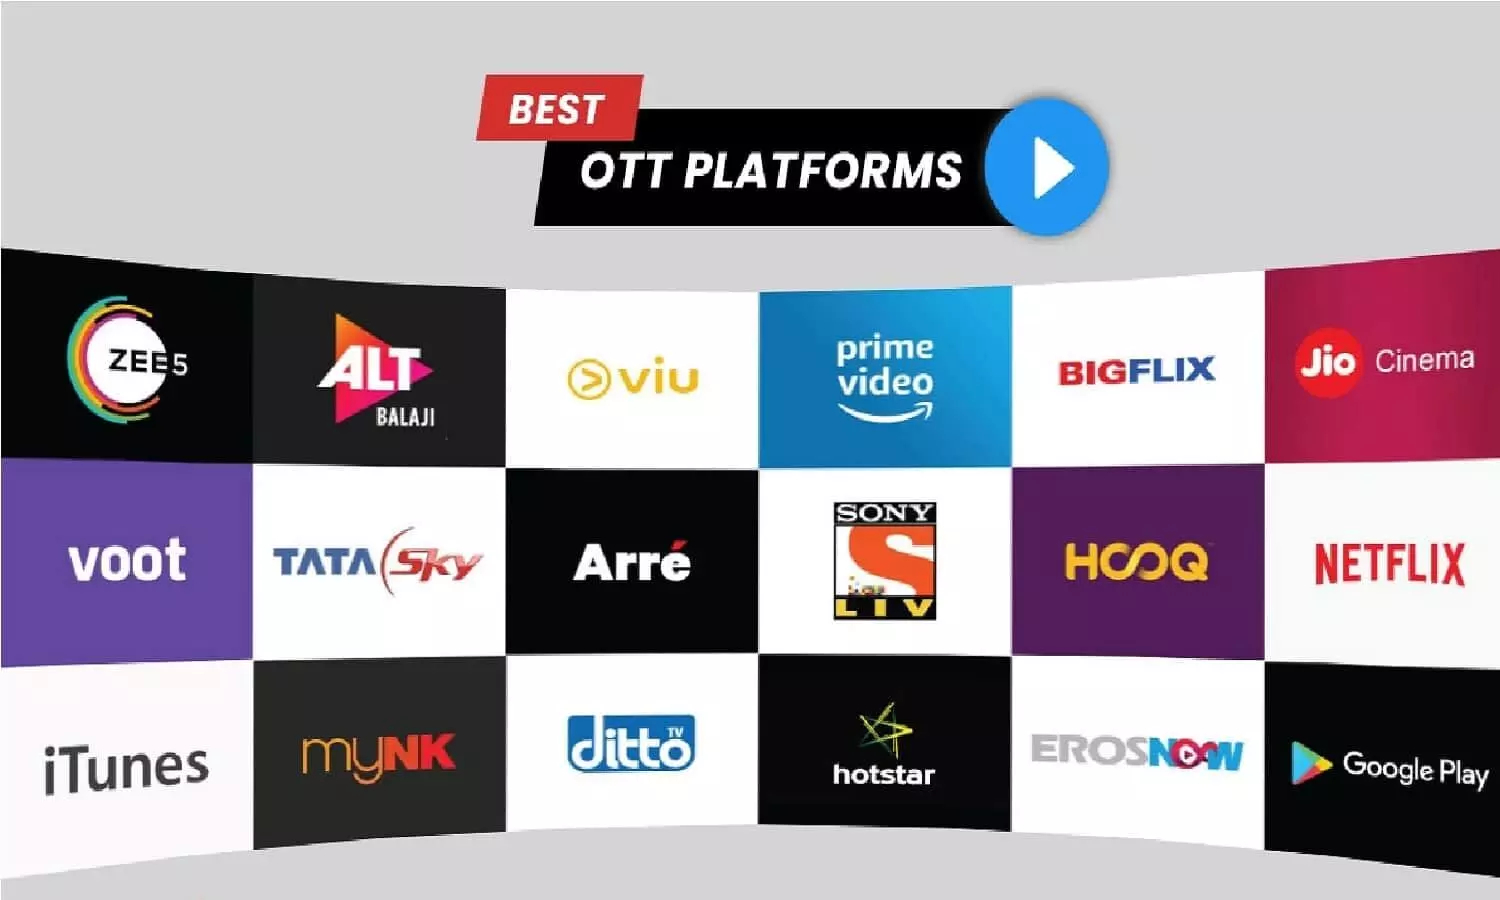 OTT Platform Update: ओटीटी प्लेटफ्रॉम वालो के लिए बड़ा ऐलान, सिर्फ 49 रुपये में 30 दिन देखे सीरीज और मूवी